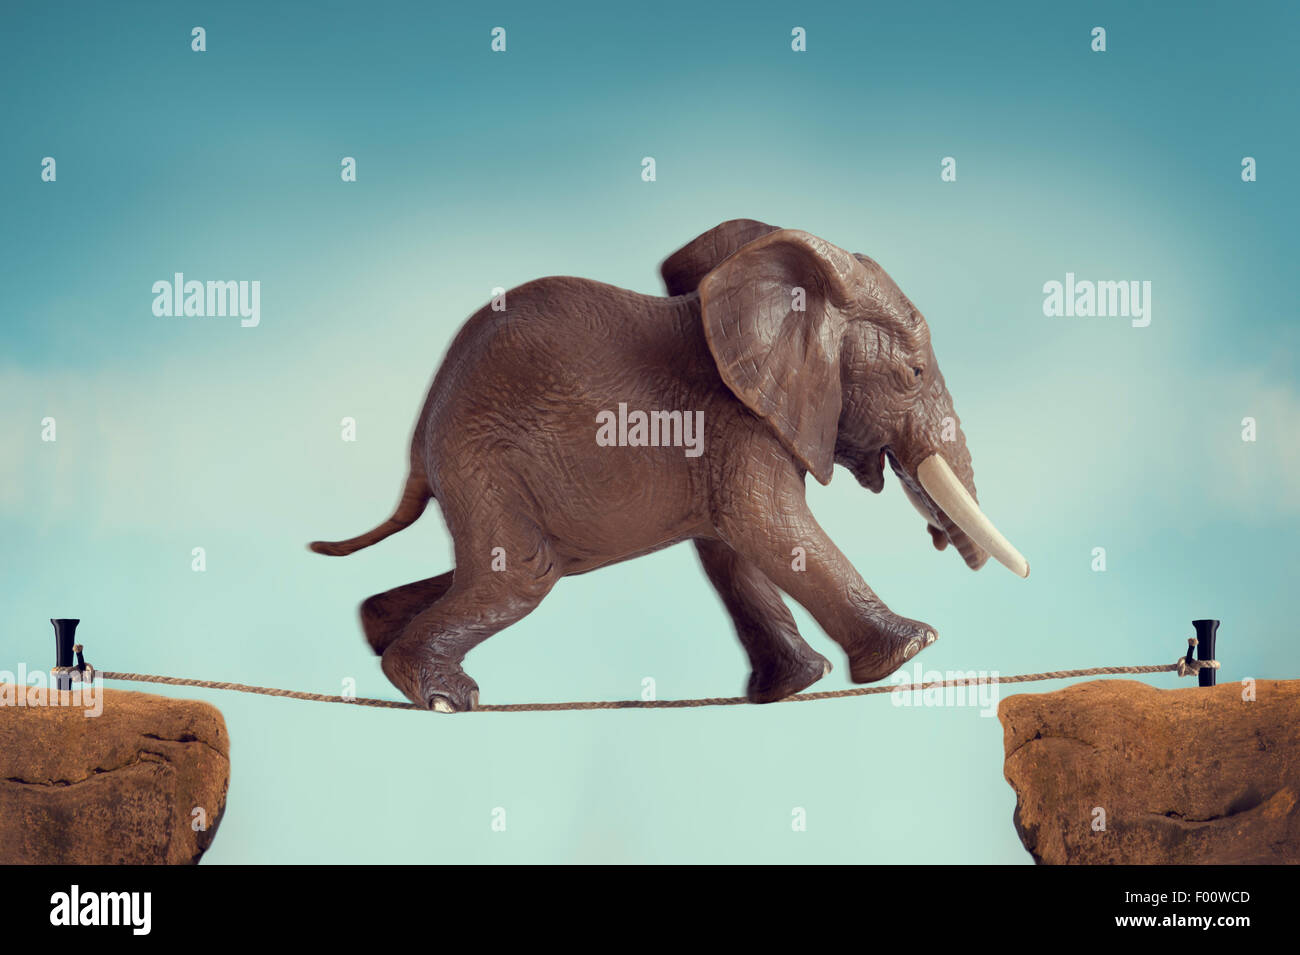 Elefanten quer durch ein Drahtseil mit Motion Blur und Vintage-filter Stockfoto